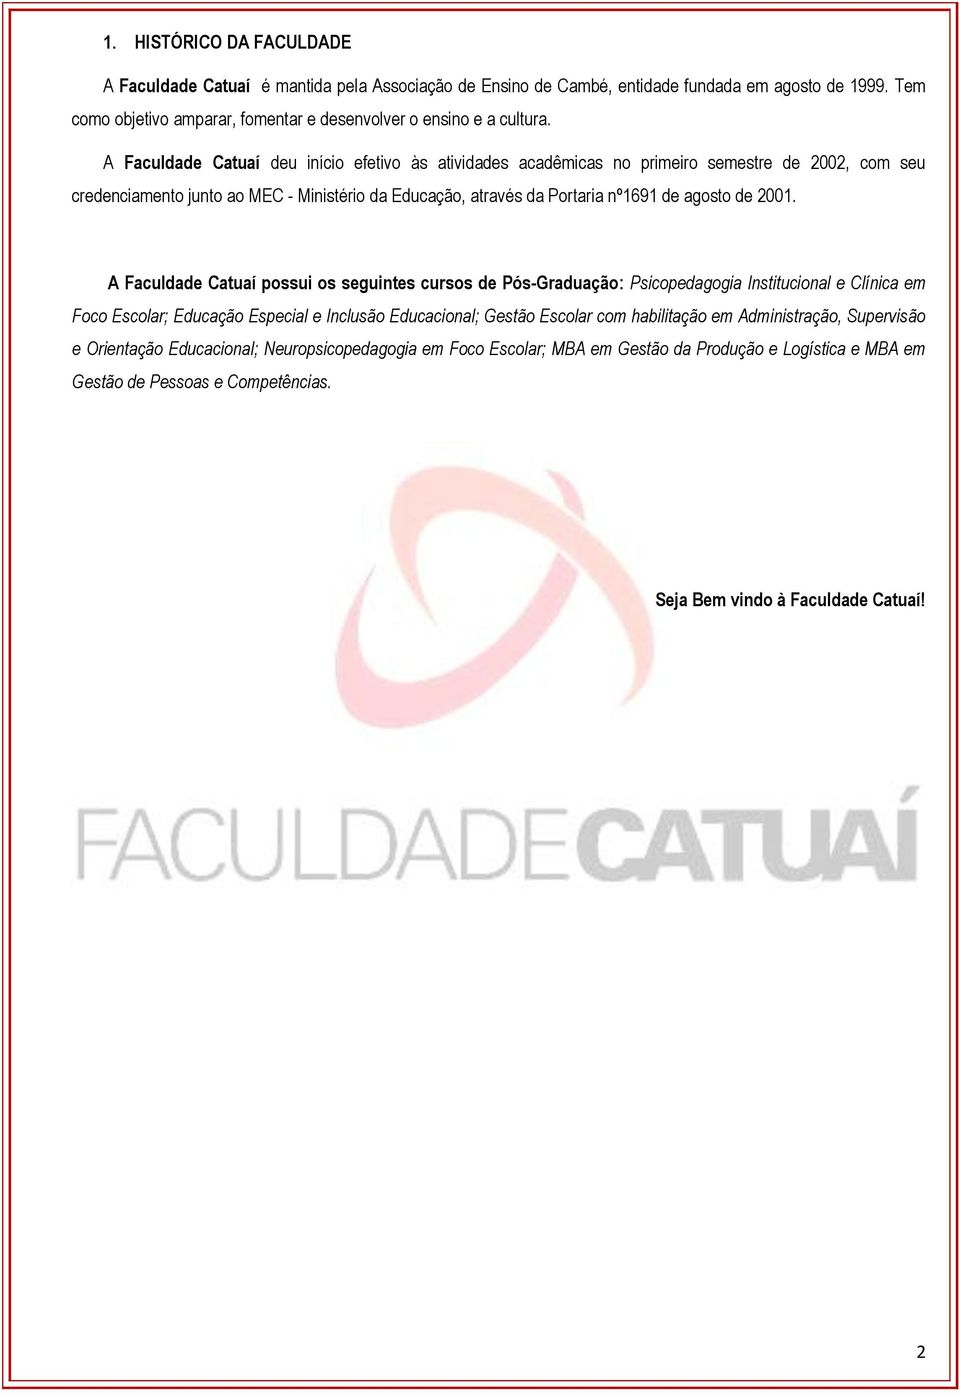 A Faculdade Catuaí possui os seguintes cursos de Pós-Graduação: Psicopedagogia Institucional e Clínica em Foco Escolar; Educação Especial e Inclusão Educacional; Gestão Escolar com habilitação em